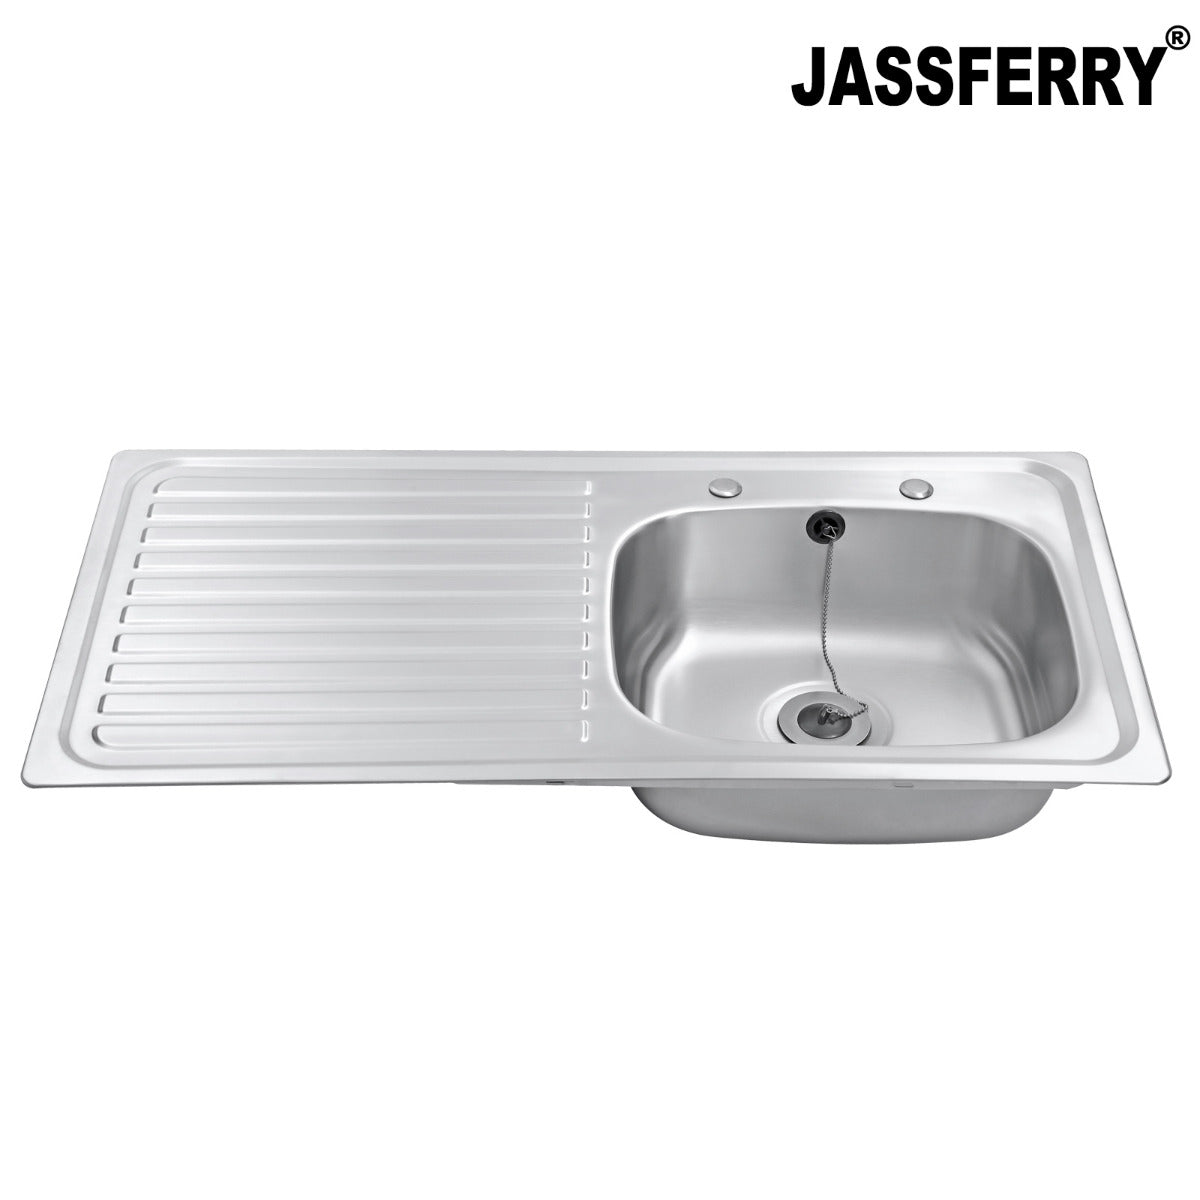 JassferryJASSFERRY Two Tap Holes Stainless Steel Kitchen Sink 1 Bowl Lefthand DrainerKitchen Sinks